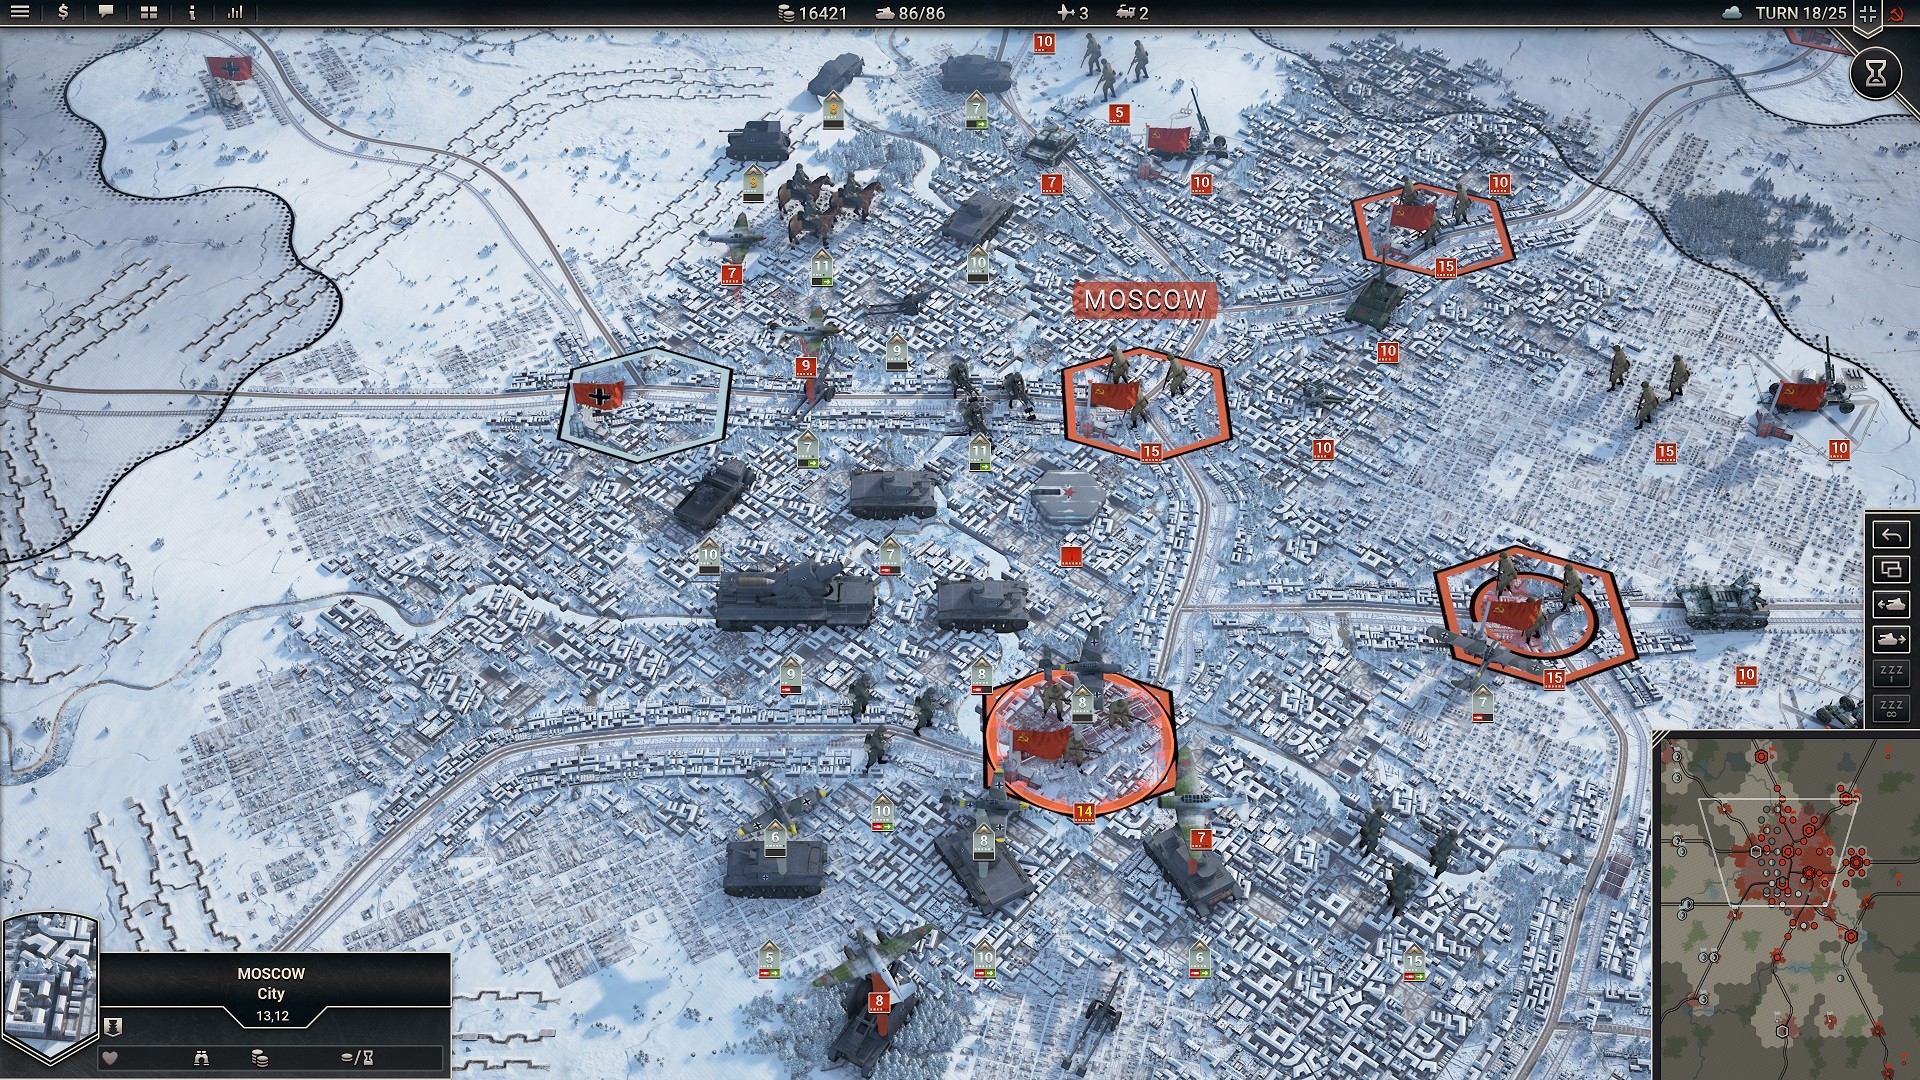 أفضل ألعاب الدبابات: Panzer Corps 2. تظهر الصورة الدبابات التي تقترب من موسكو الثلجي